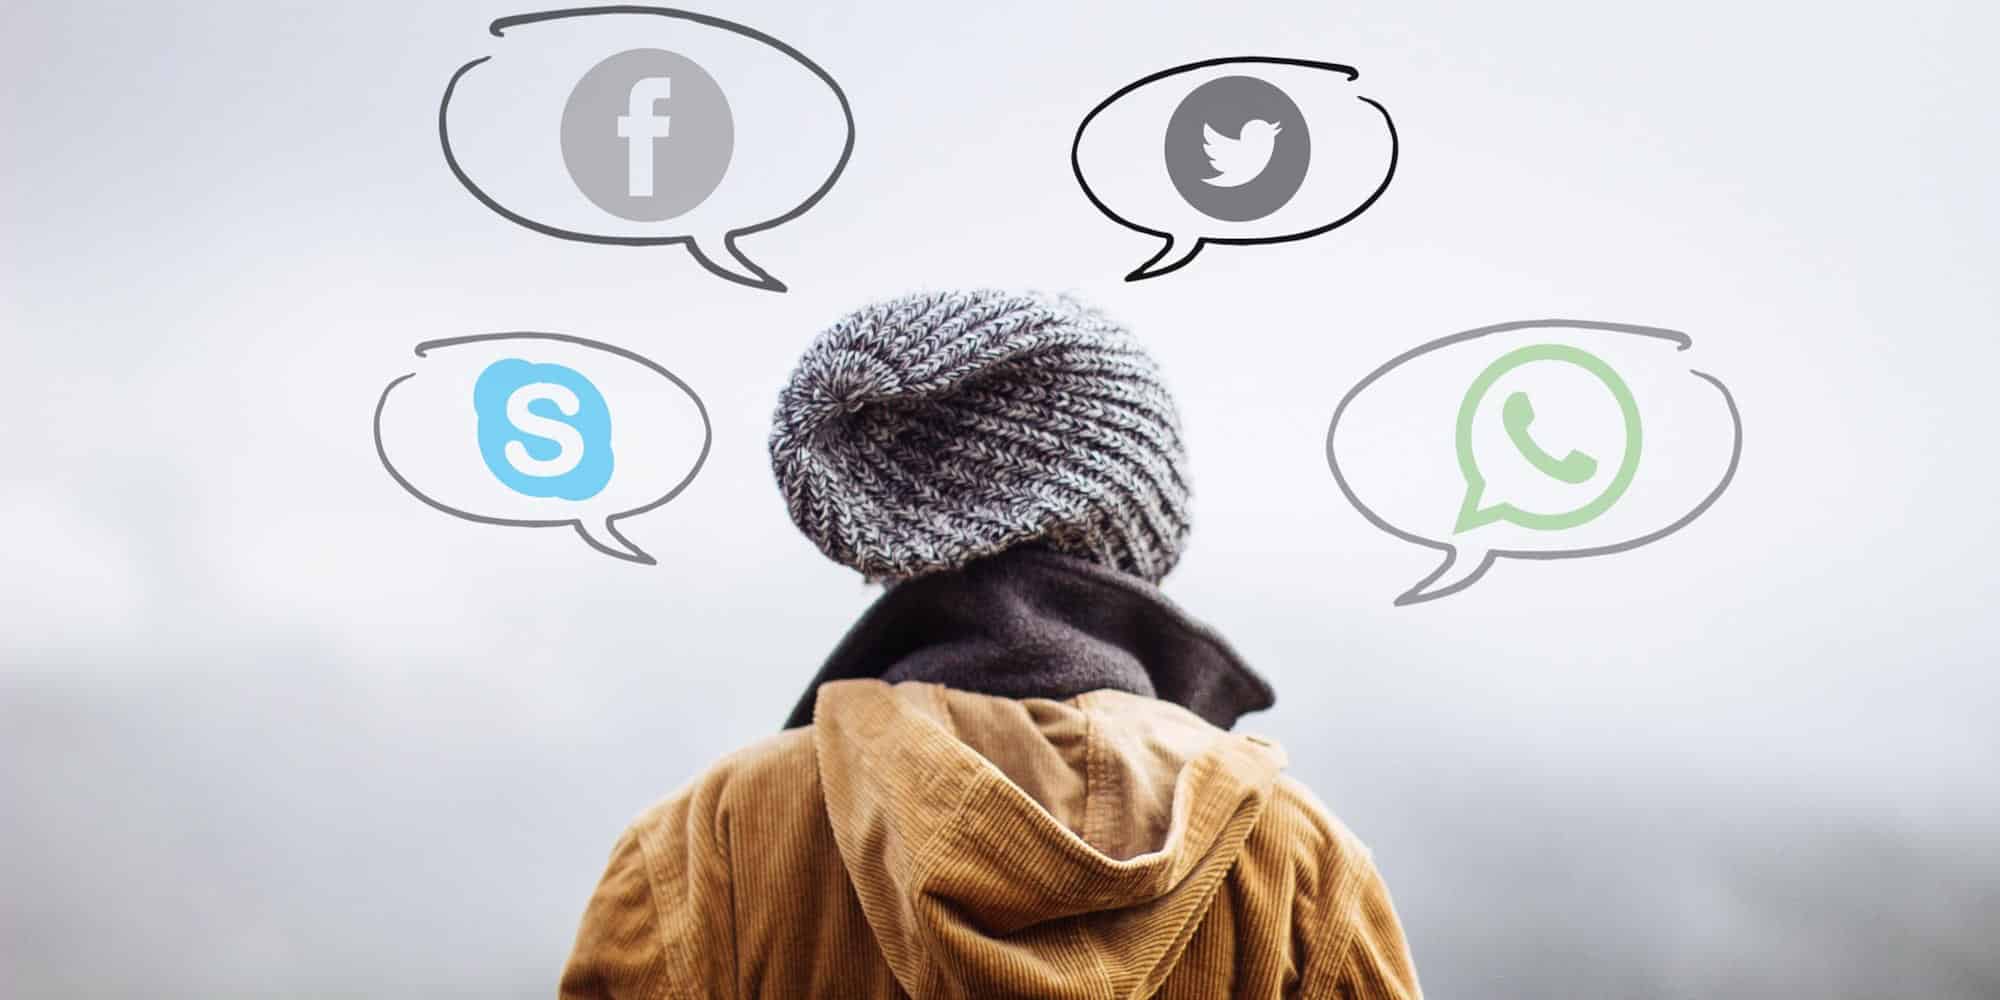 Άνδρας με σκούφο αναρωτιέται, ποιο είναι το πιο δημοφιλές social media